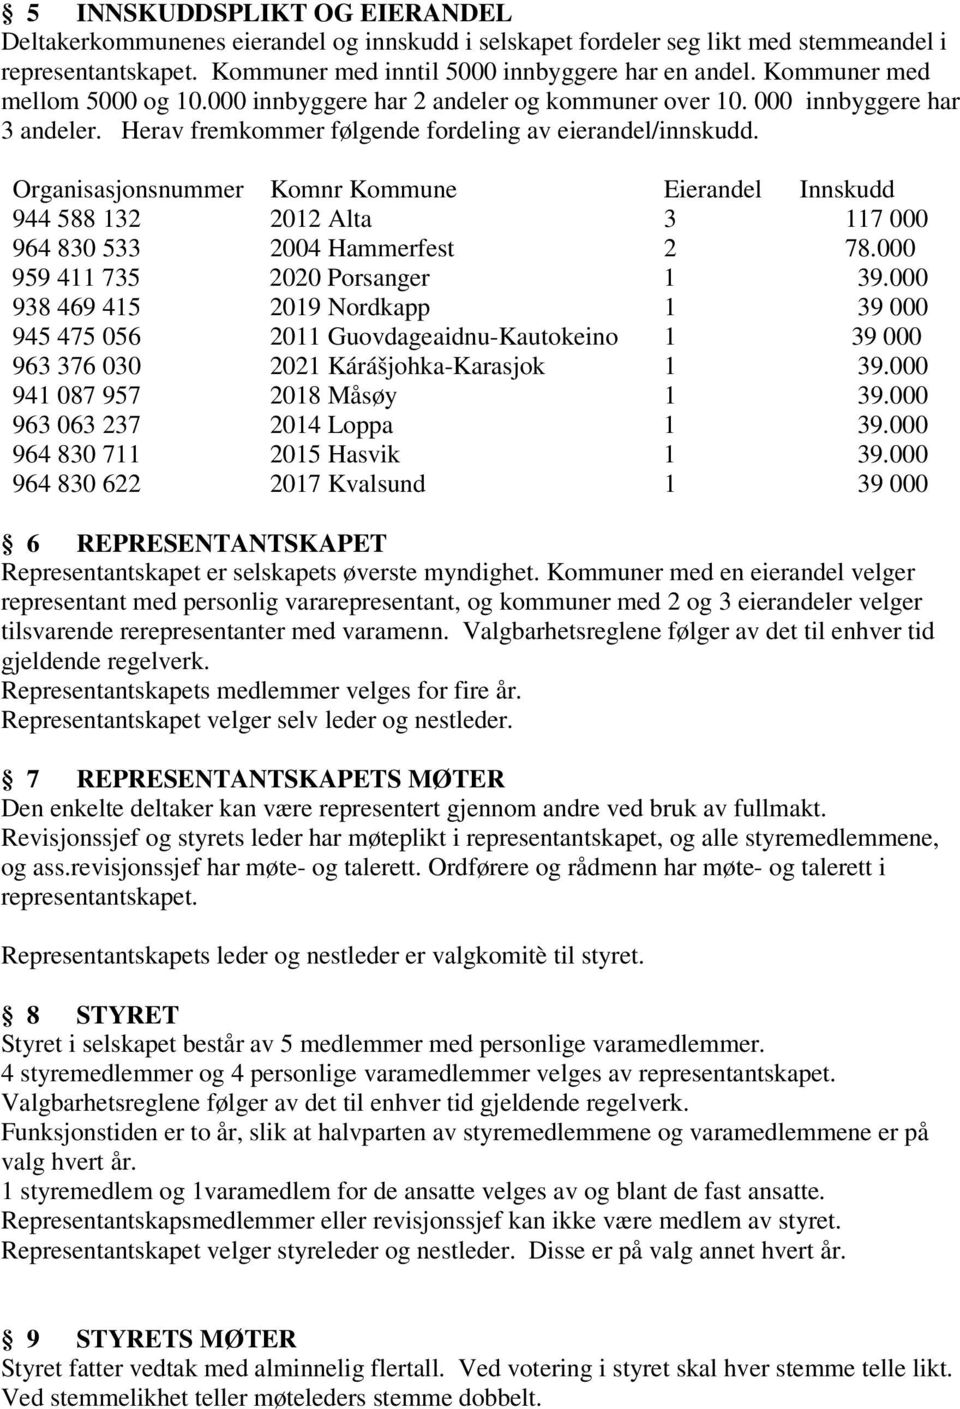 Organisasjonsnummer Komnr Kommune Eierandel Innskudd 944 588 132 2012 Alta 3 117 000 964 830 533 2004 Hammerfest 2 78.000 959 411 735 2020 Porsanger 1 39.